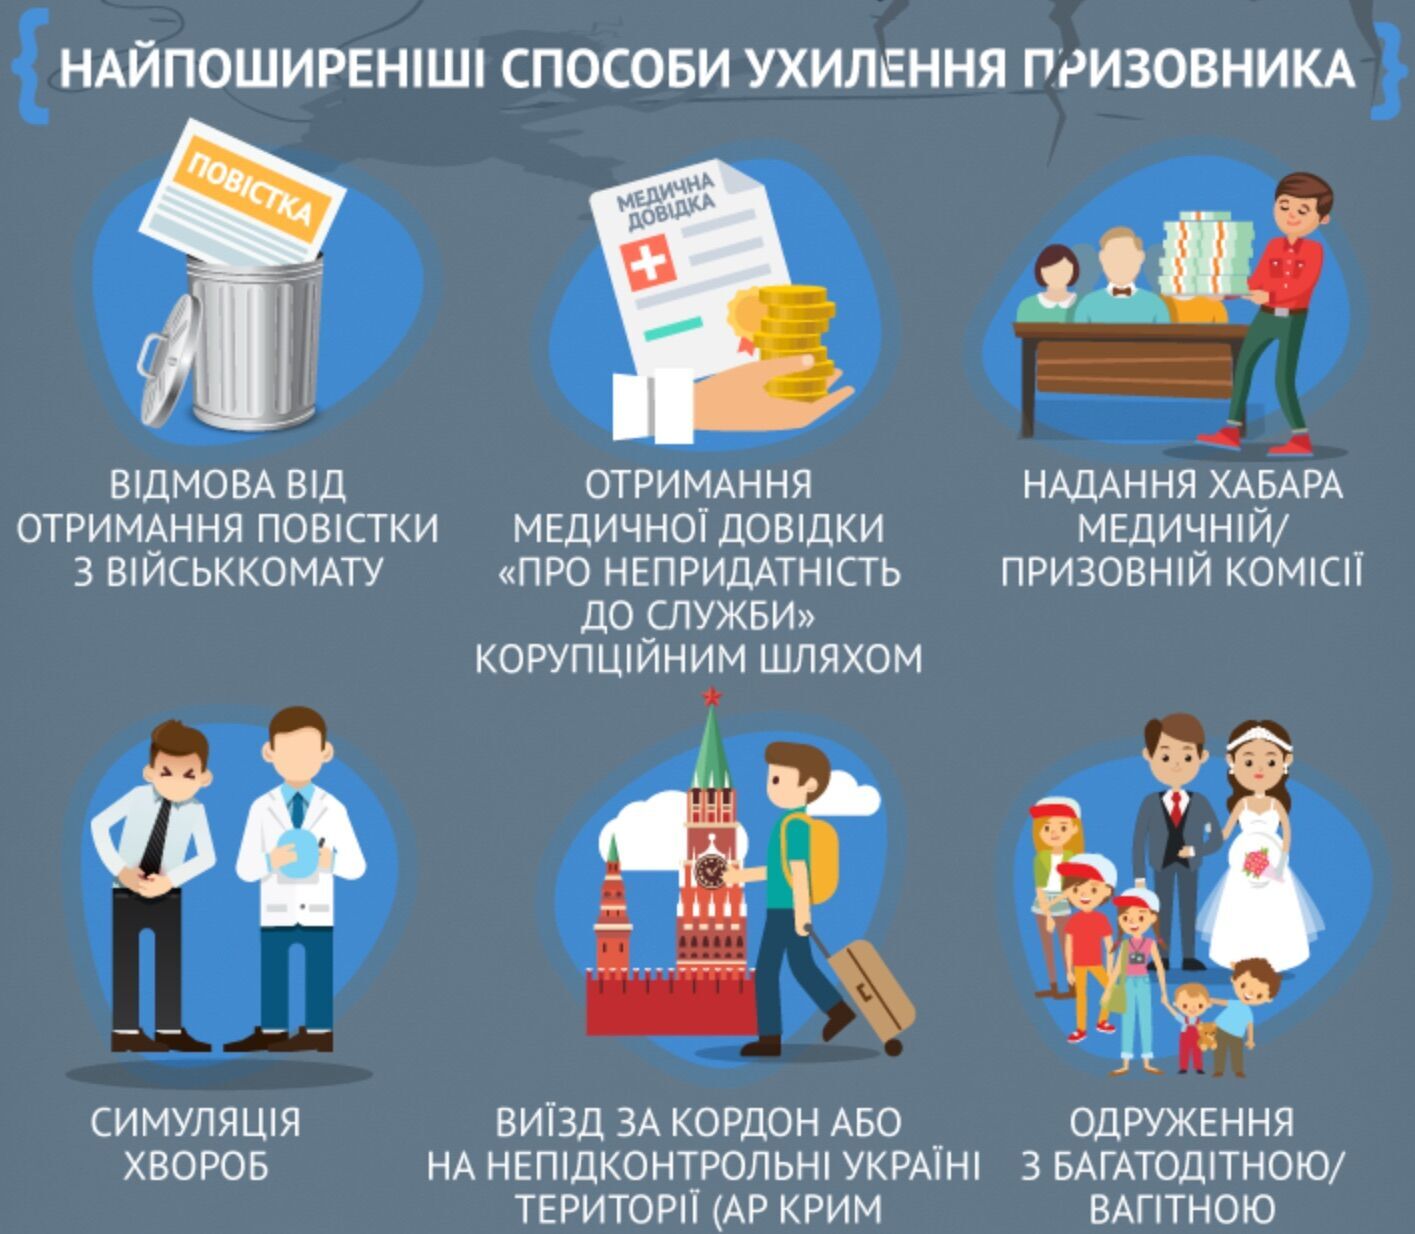 Самые распространенные способы ''откосить'' от мобилизации в Украине: инфографика